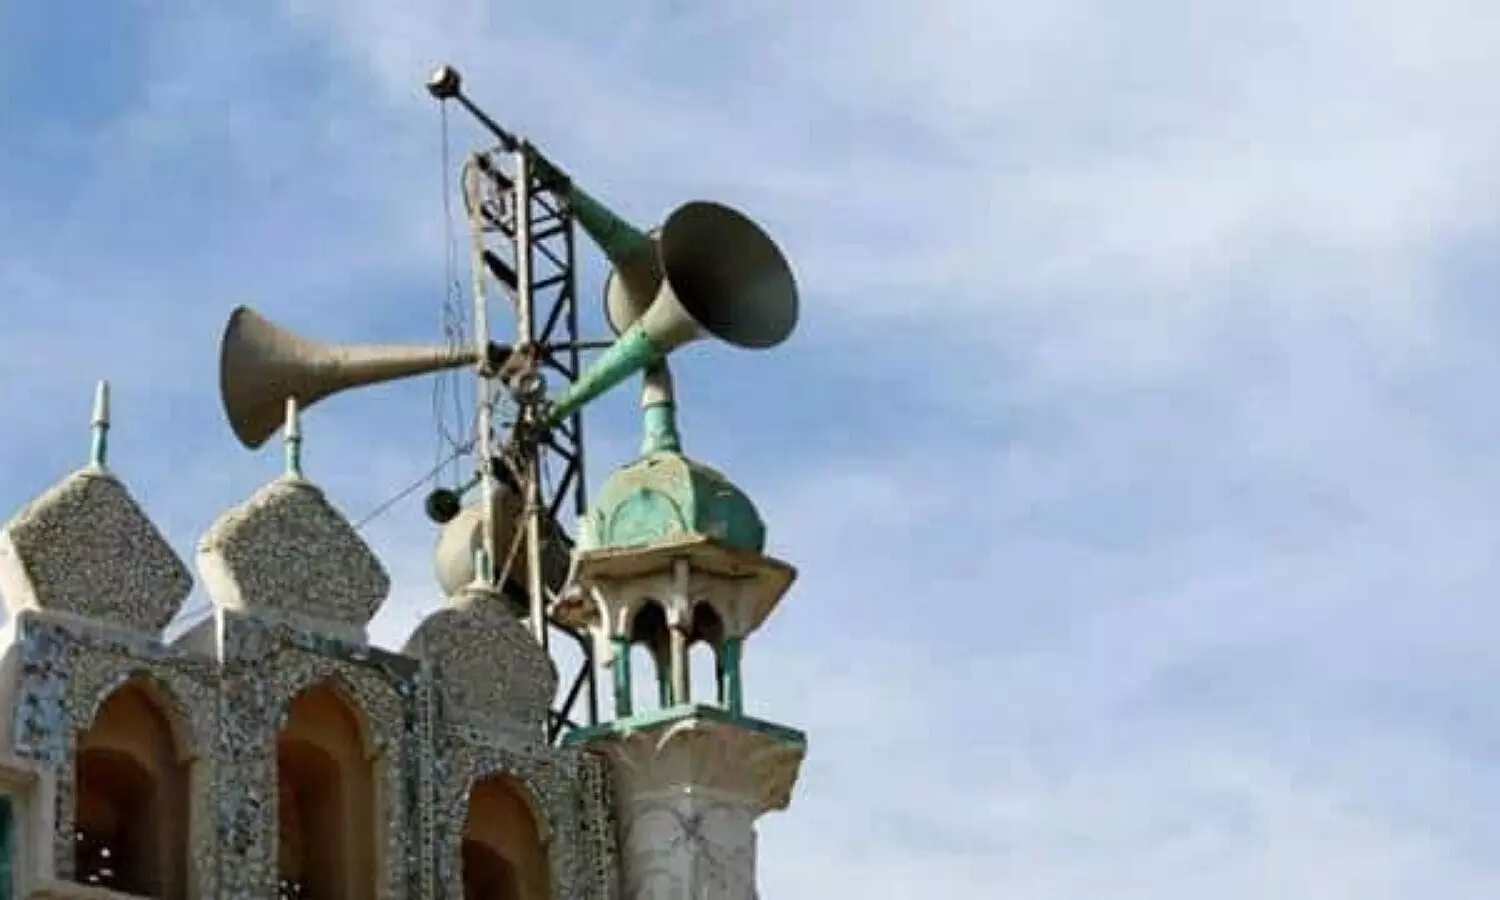 loudspeakers in mosques